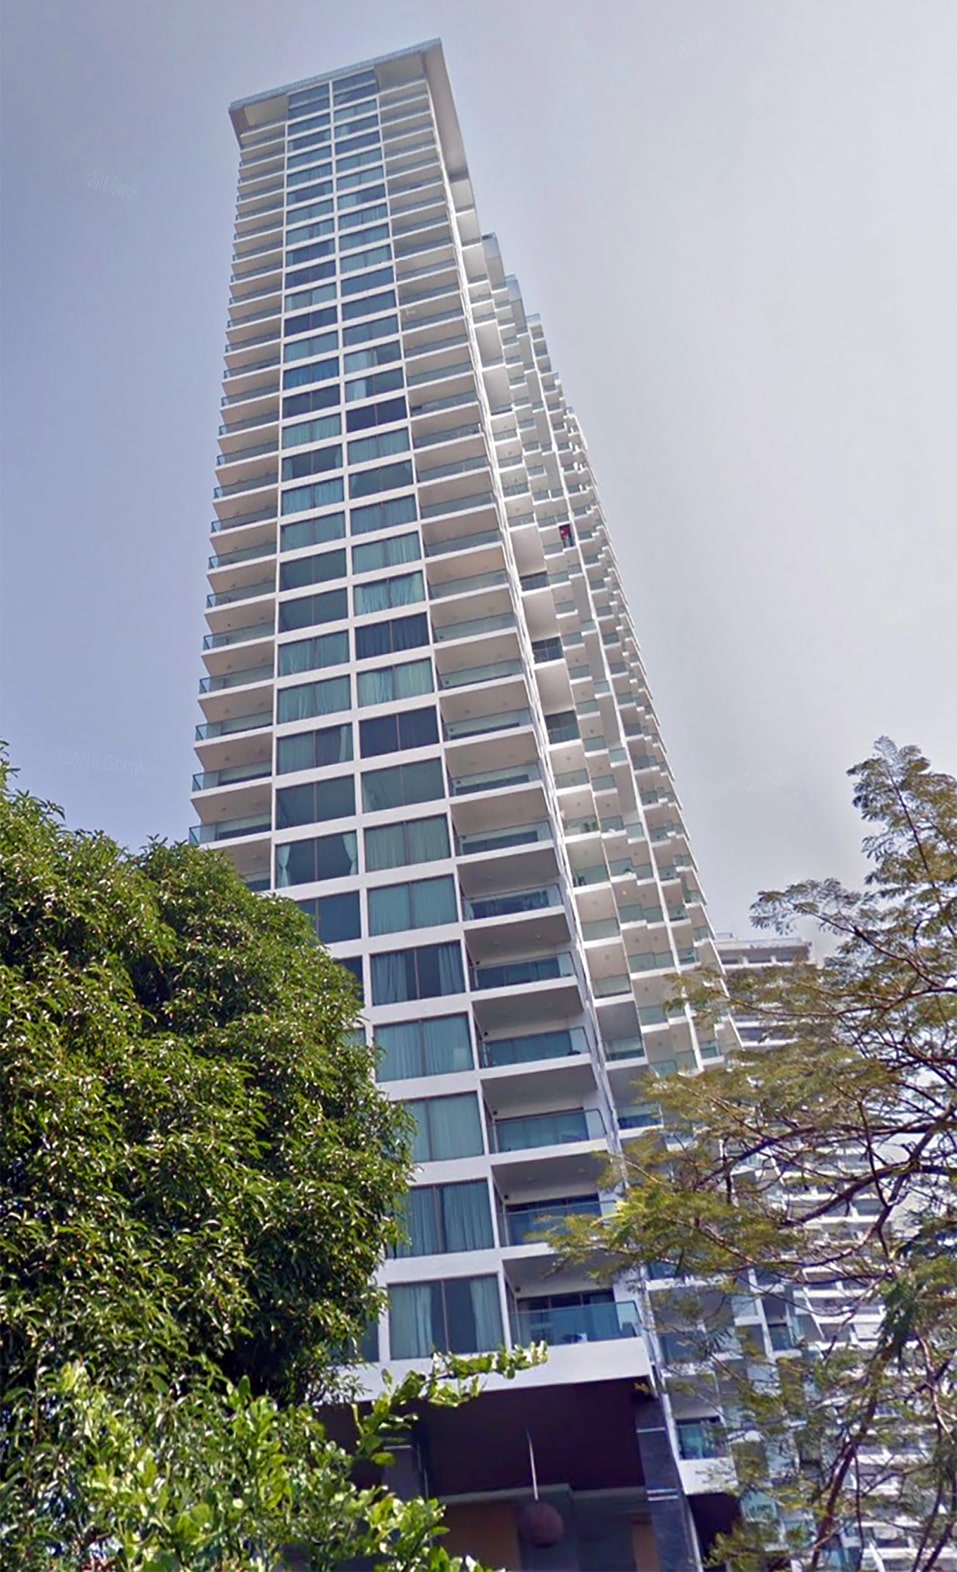 Wong Amat Tower: Ikonisches Hochhaus des Architekten Mario Kleff